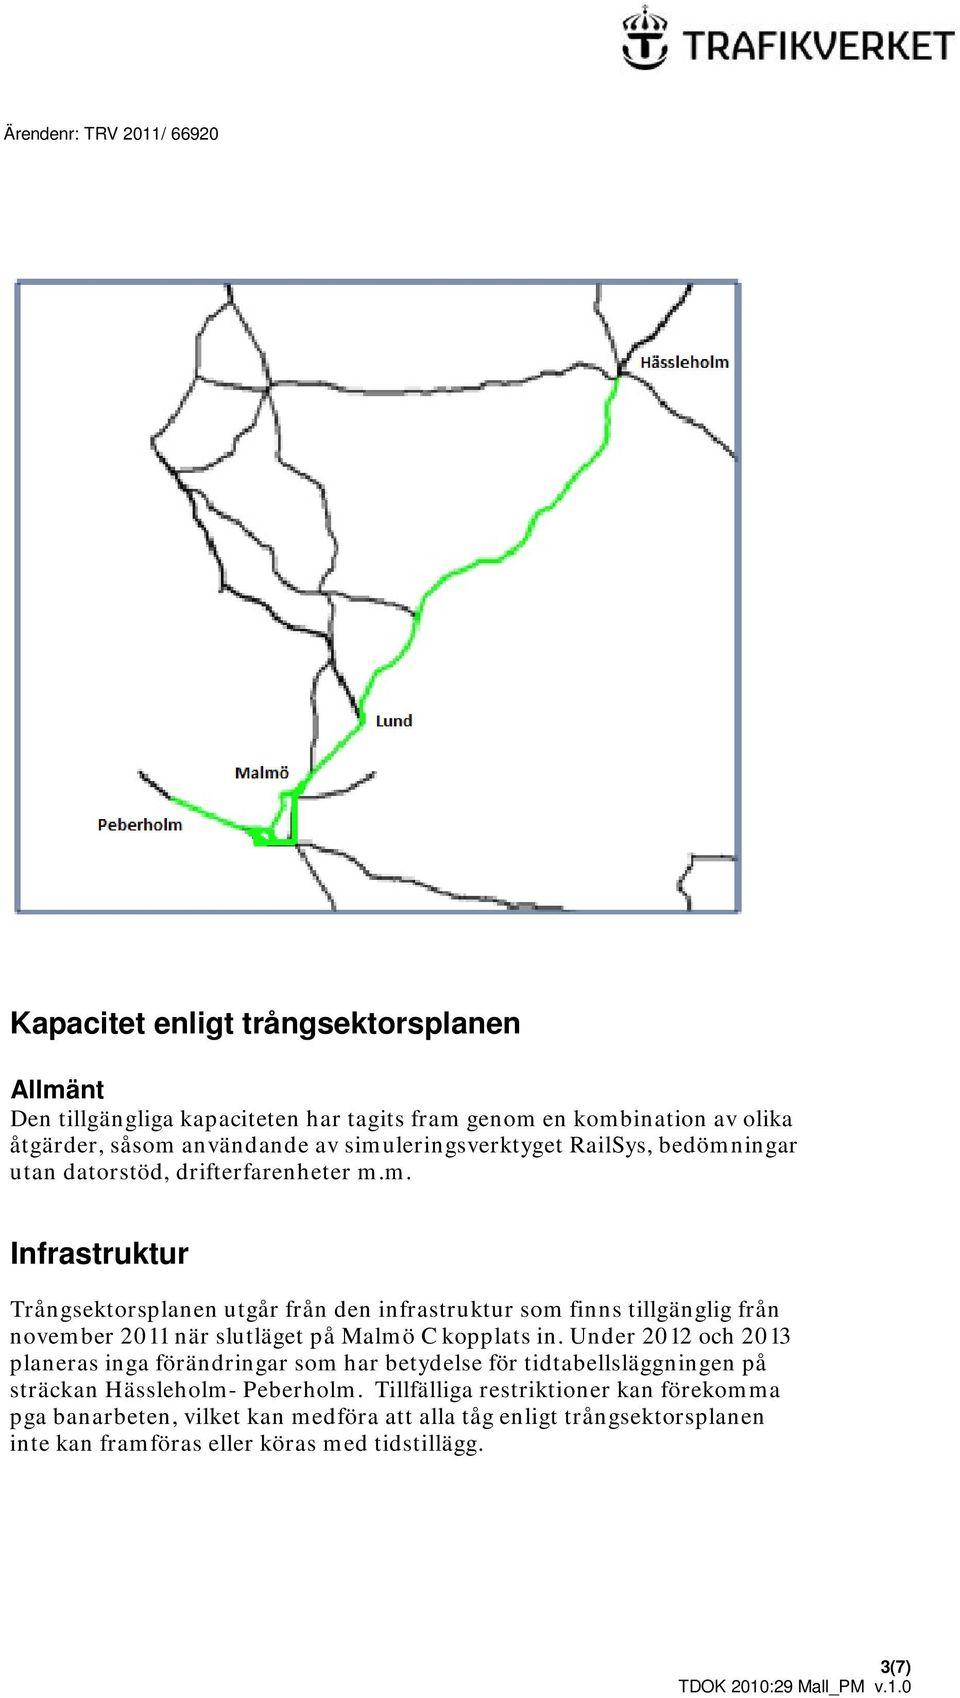 Under 2012 och 2013 planeras inga förändringar som har betydelse för tidtabellsläggningen på sträckan Hässleholm- Peberholm.